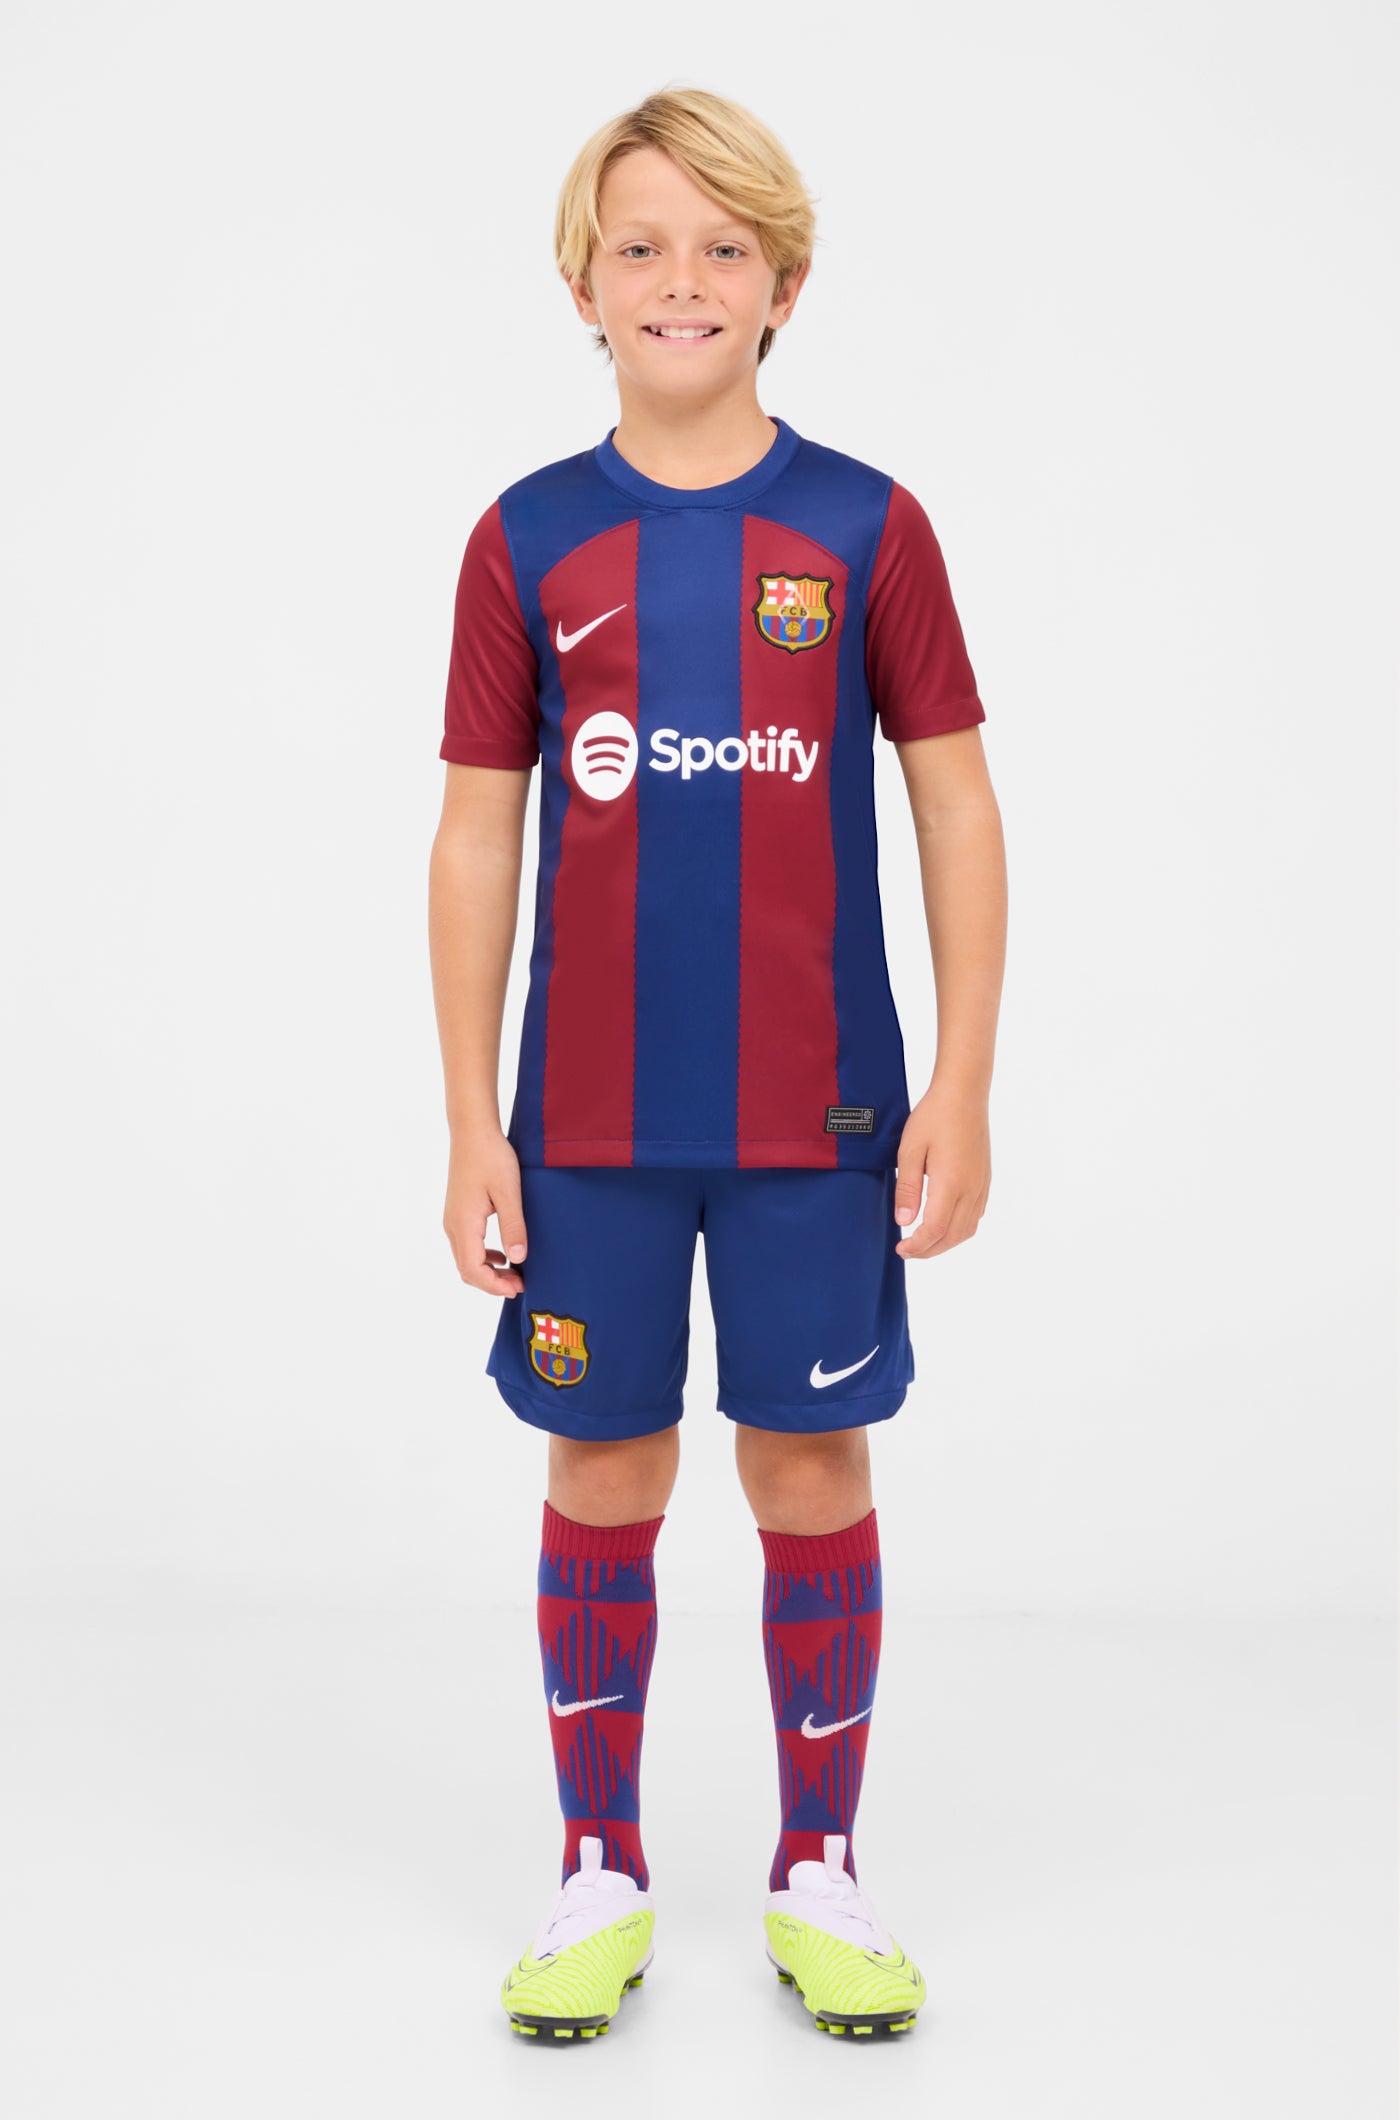 FC Barcelona home shirt 23/24 - Junior